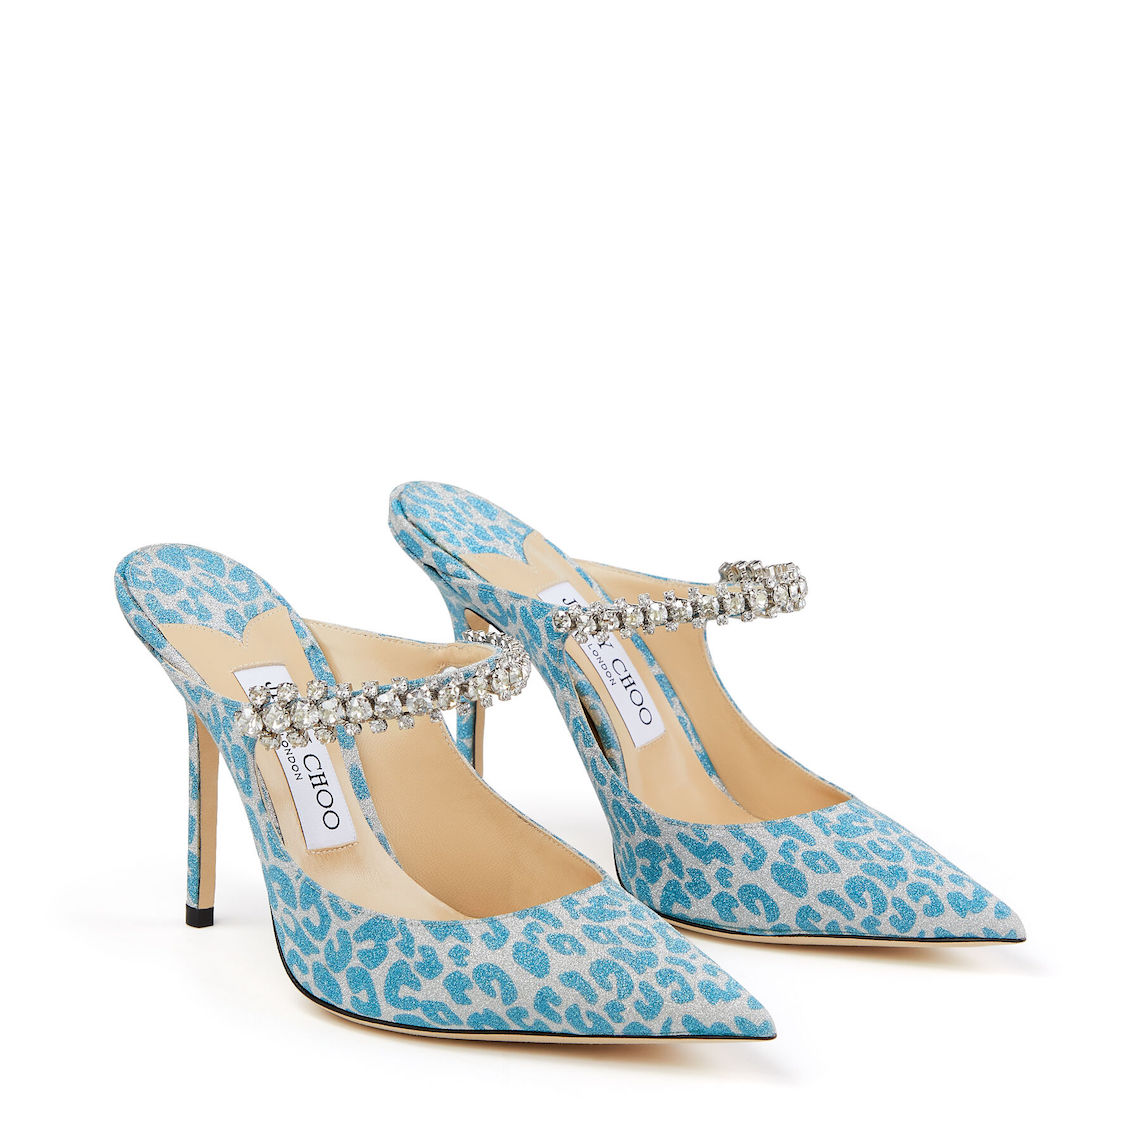 Jimmy Choo Bing 100 in Blue Leopard Print Best Blue Bridal Shoes Heels Booties Sandals Flats for Your Something Blue Wedding Bridal Musings - 22 Đôi giày cô dâu màu xanh lam cho 'Thứ gì đó màu xanh lam' của bạn